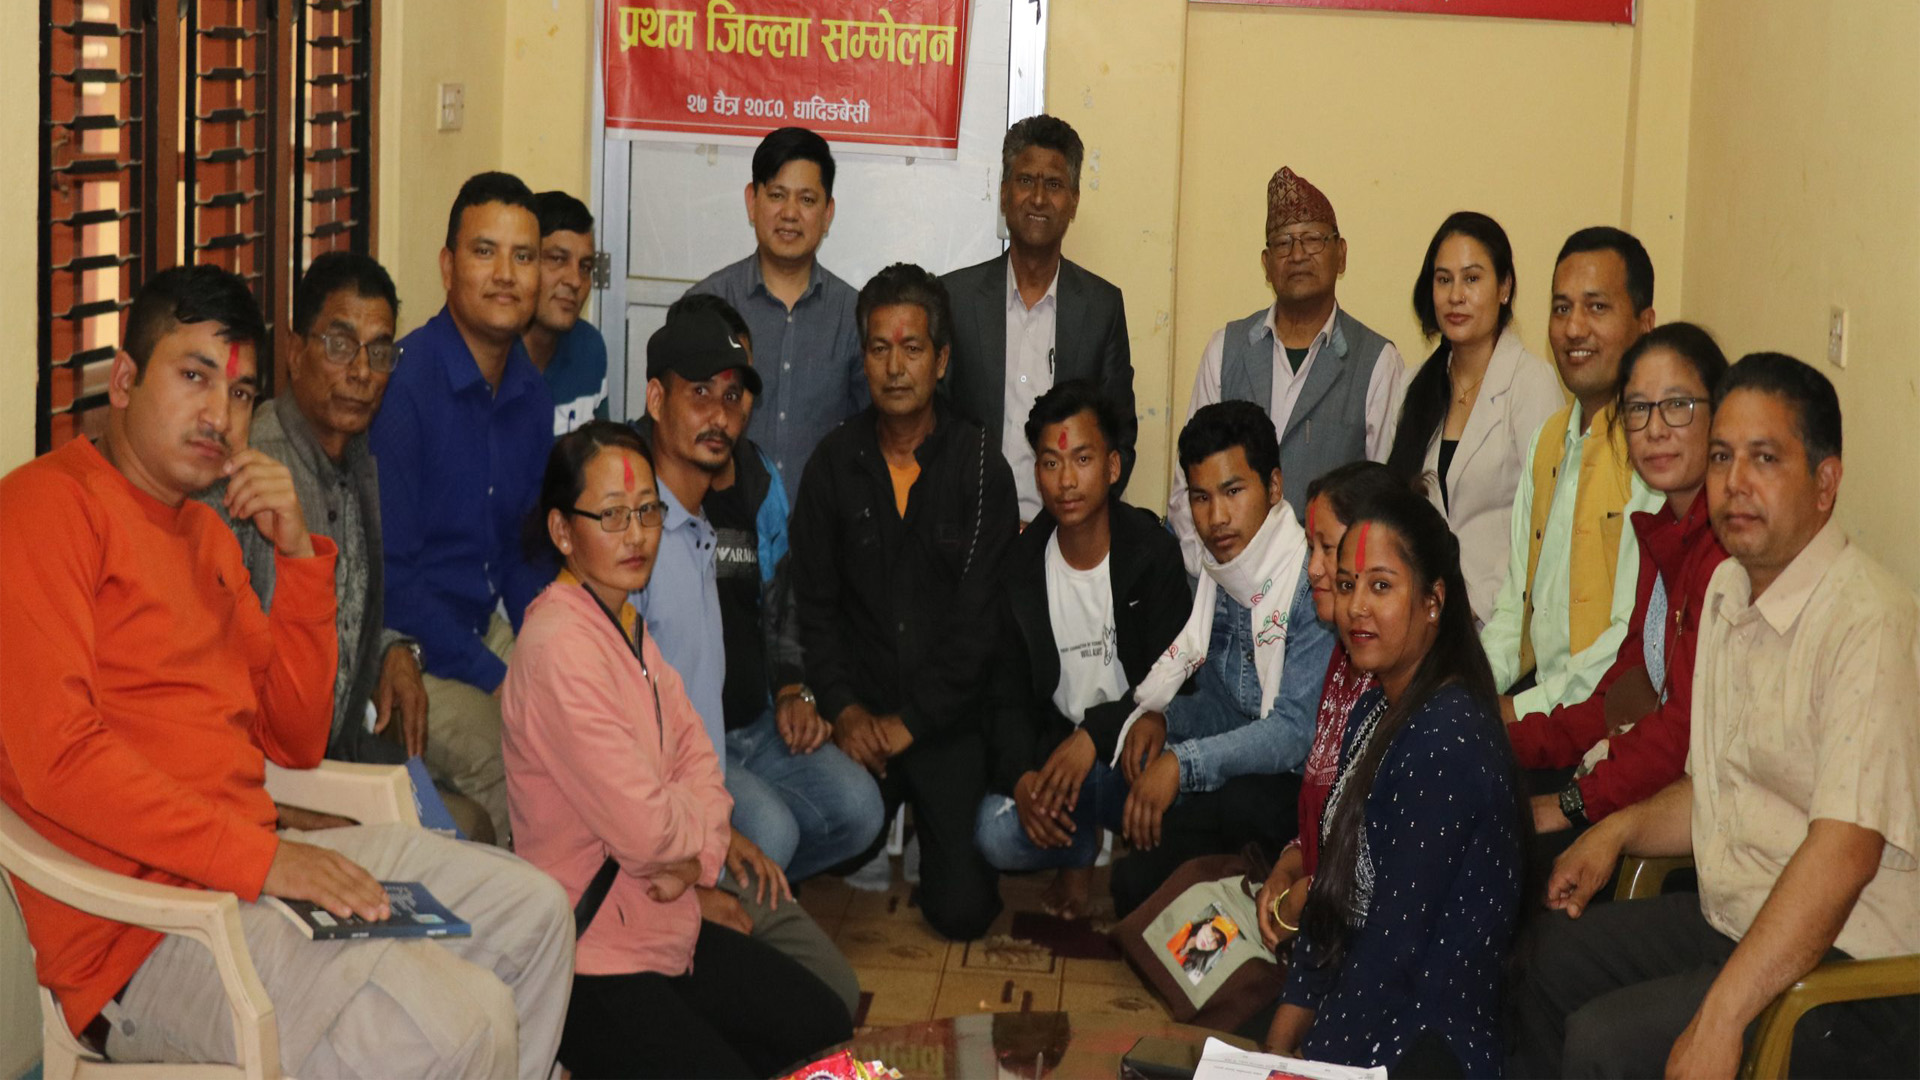 जनसांस्कृतिक महासंघ नेपाल जिल्ला समिति धादिङको प्रथम सम्मेलन सकियो,अध्यक्षमा उमेशकुमार कंडेल चयन